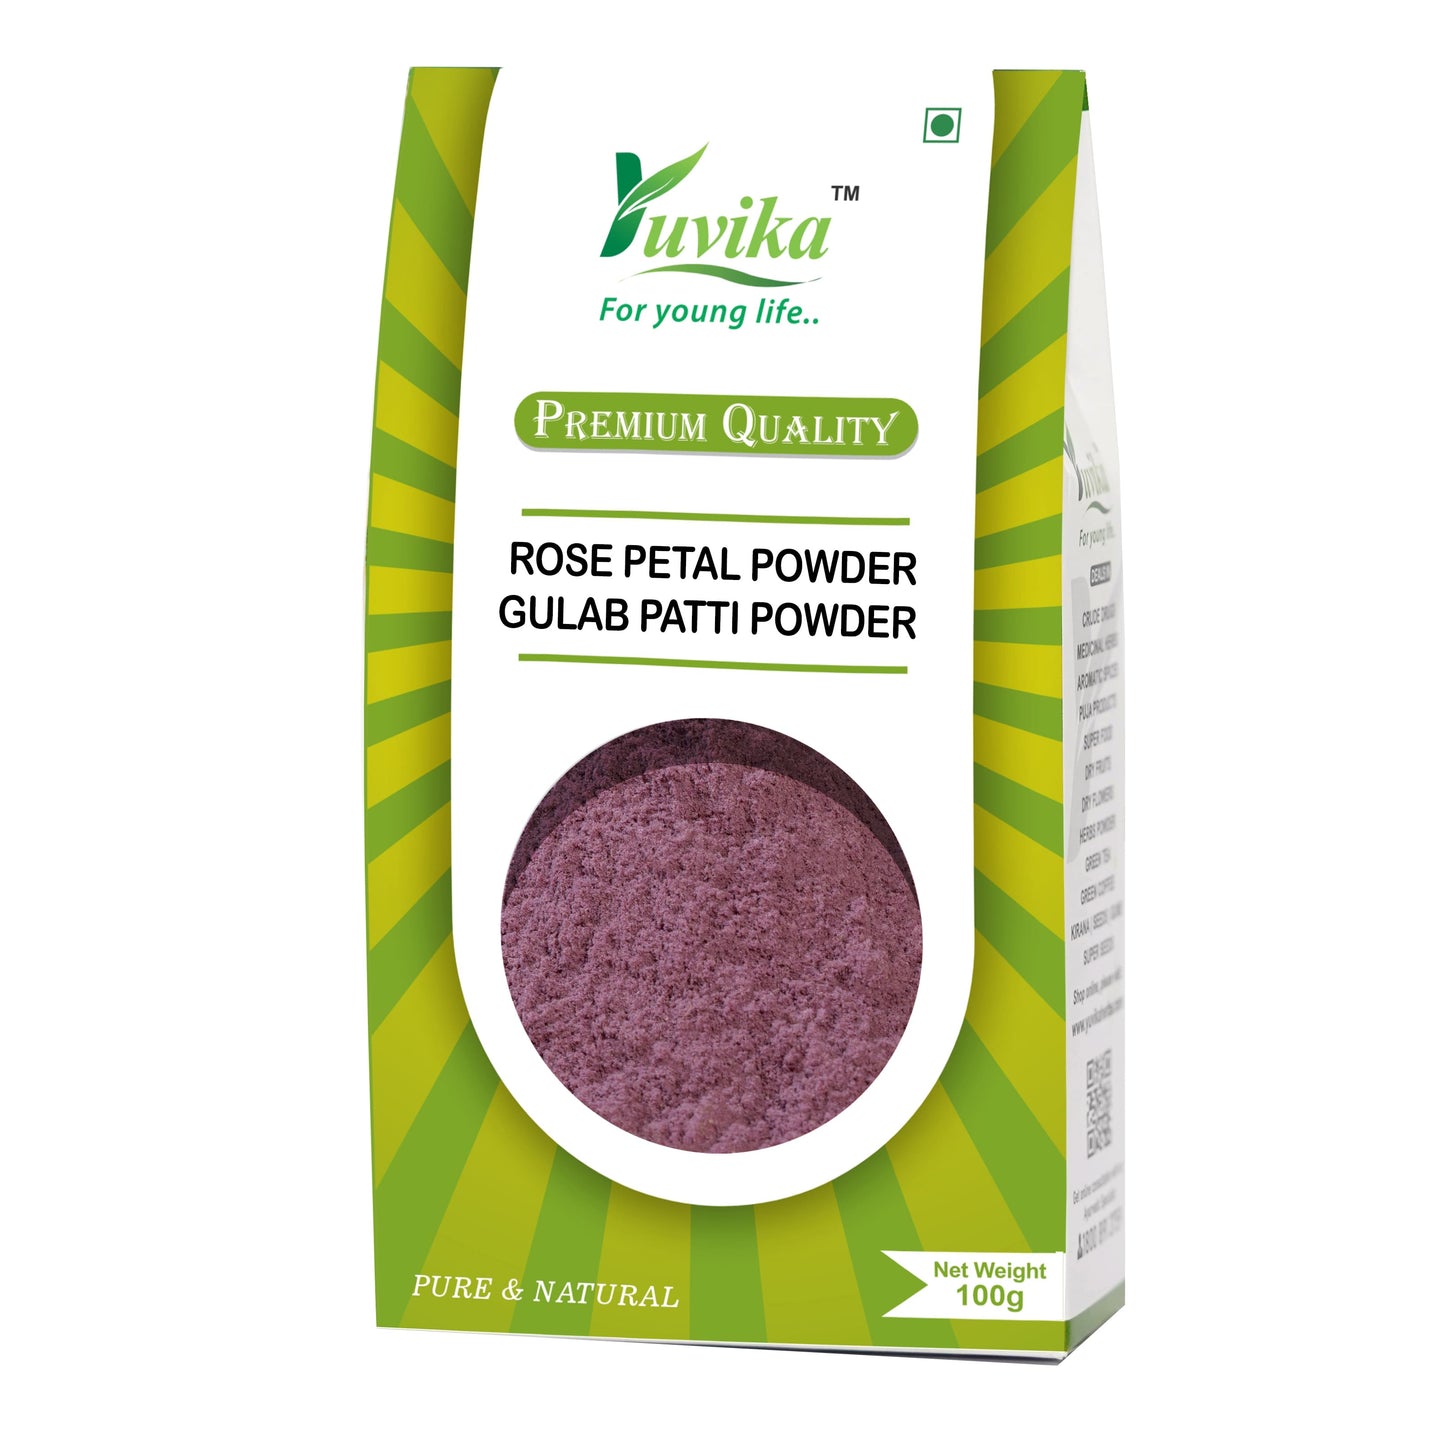 Rose Petal Powder - Rosa Gallica - Gulab Patti Powder (100g)